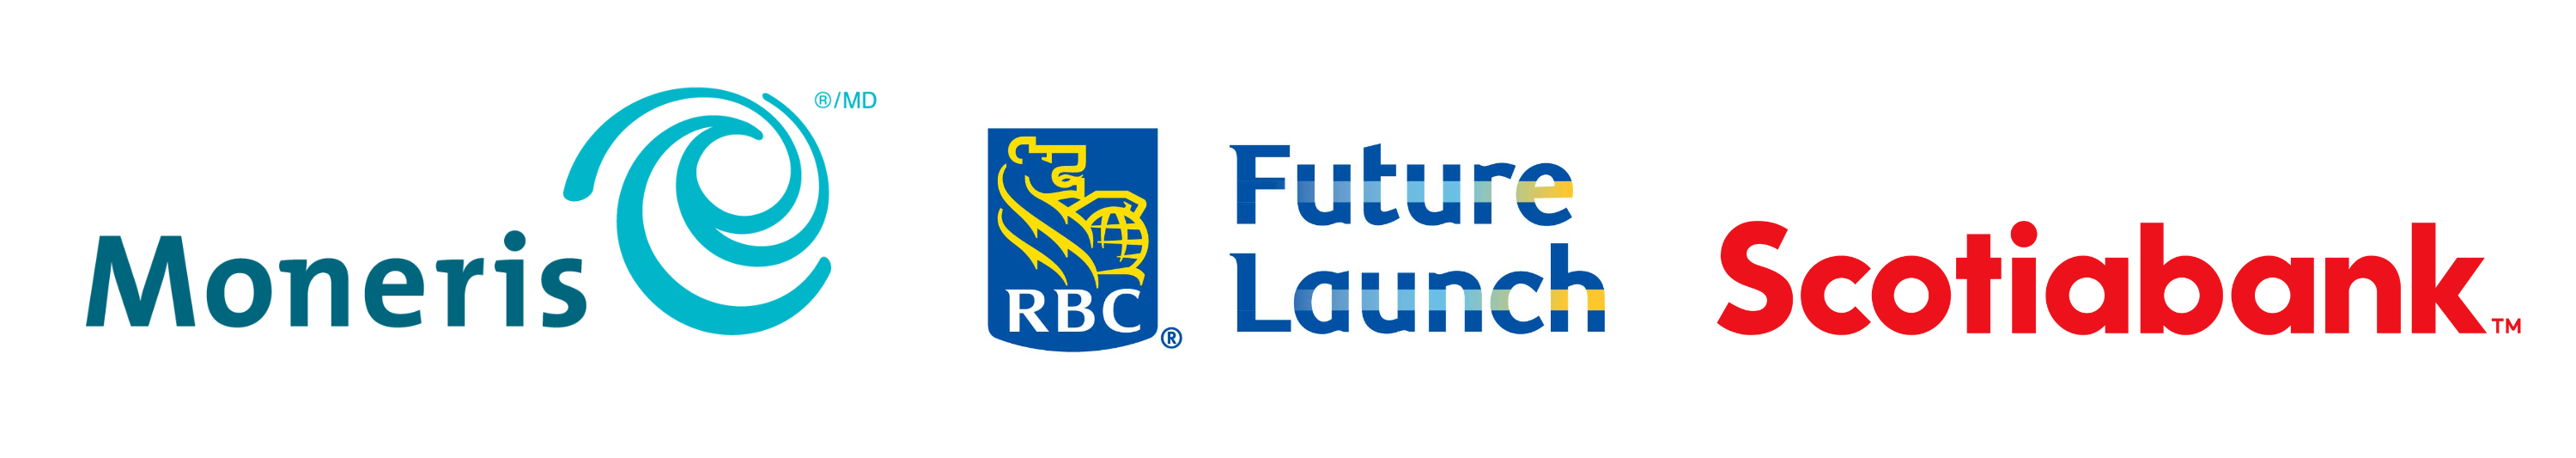 Moneris, RBC Future Launch and Scotiabank logos